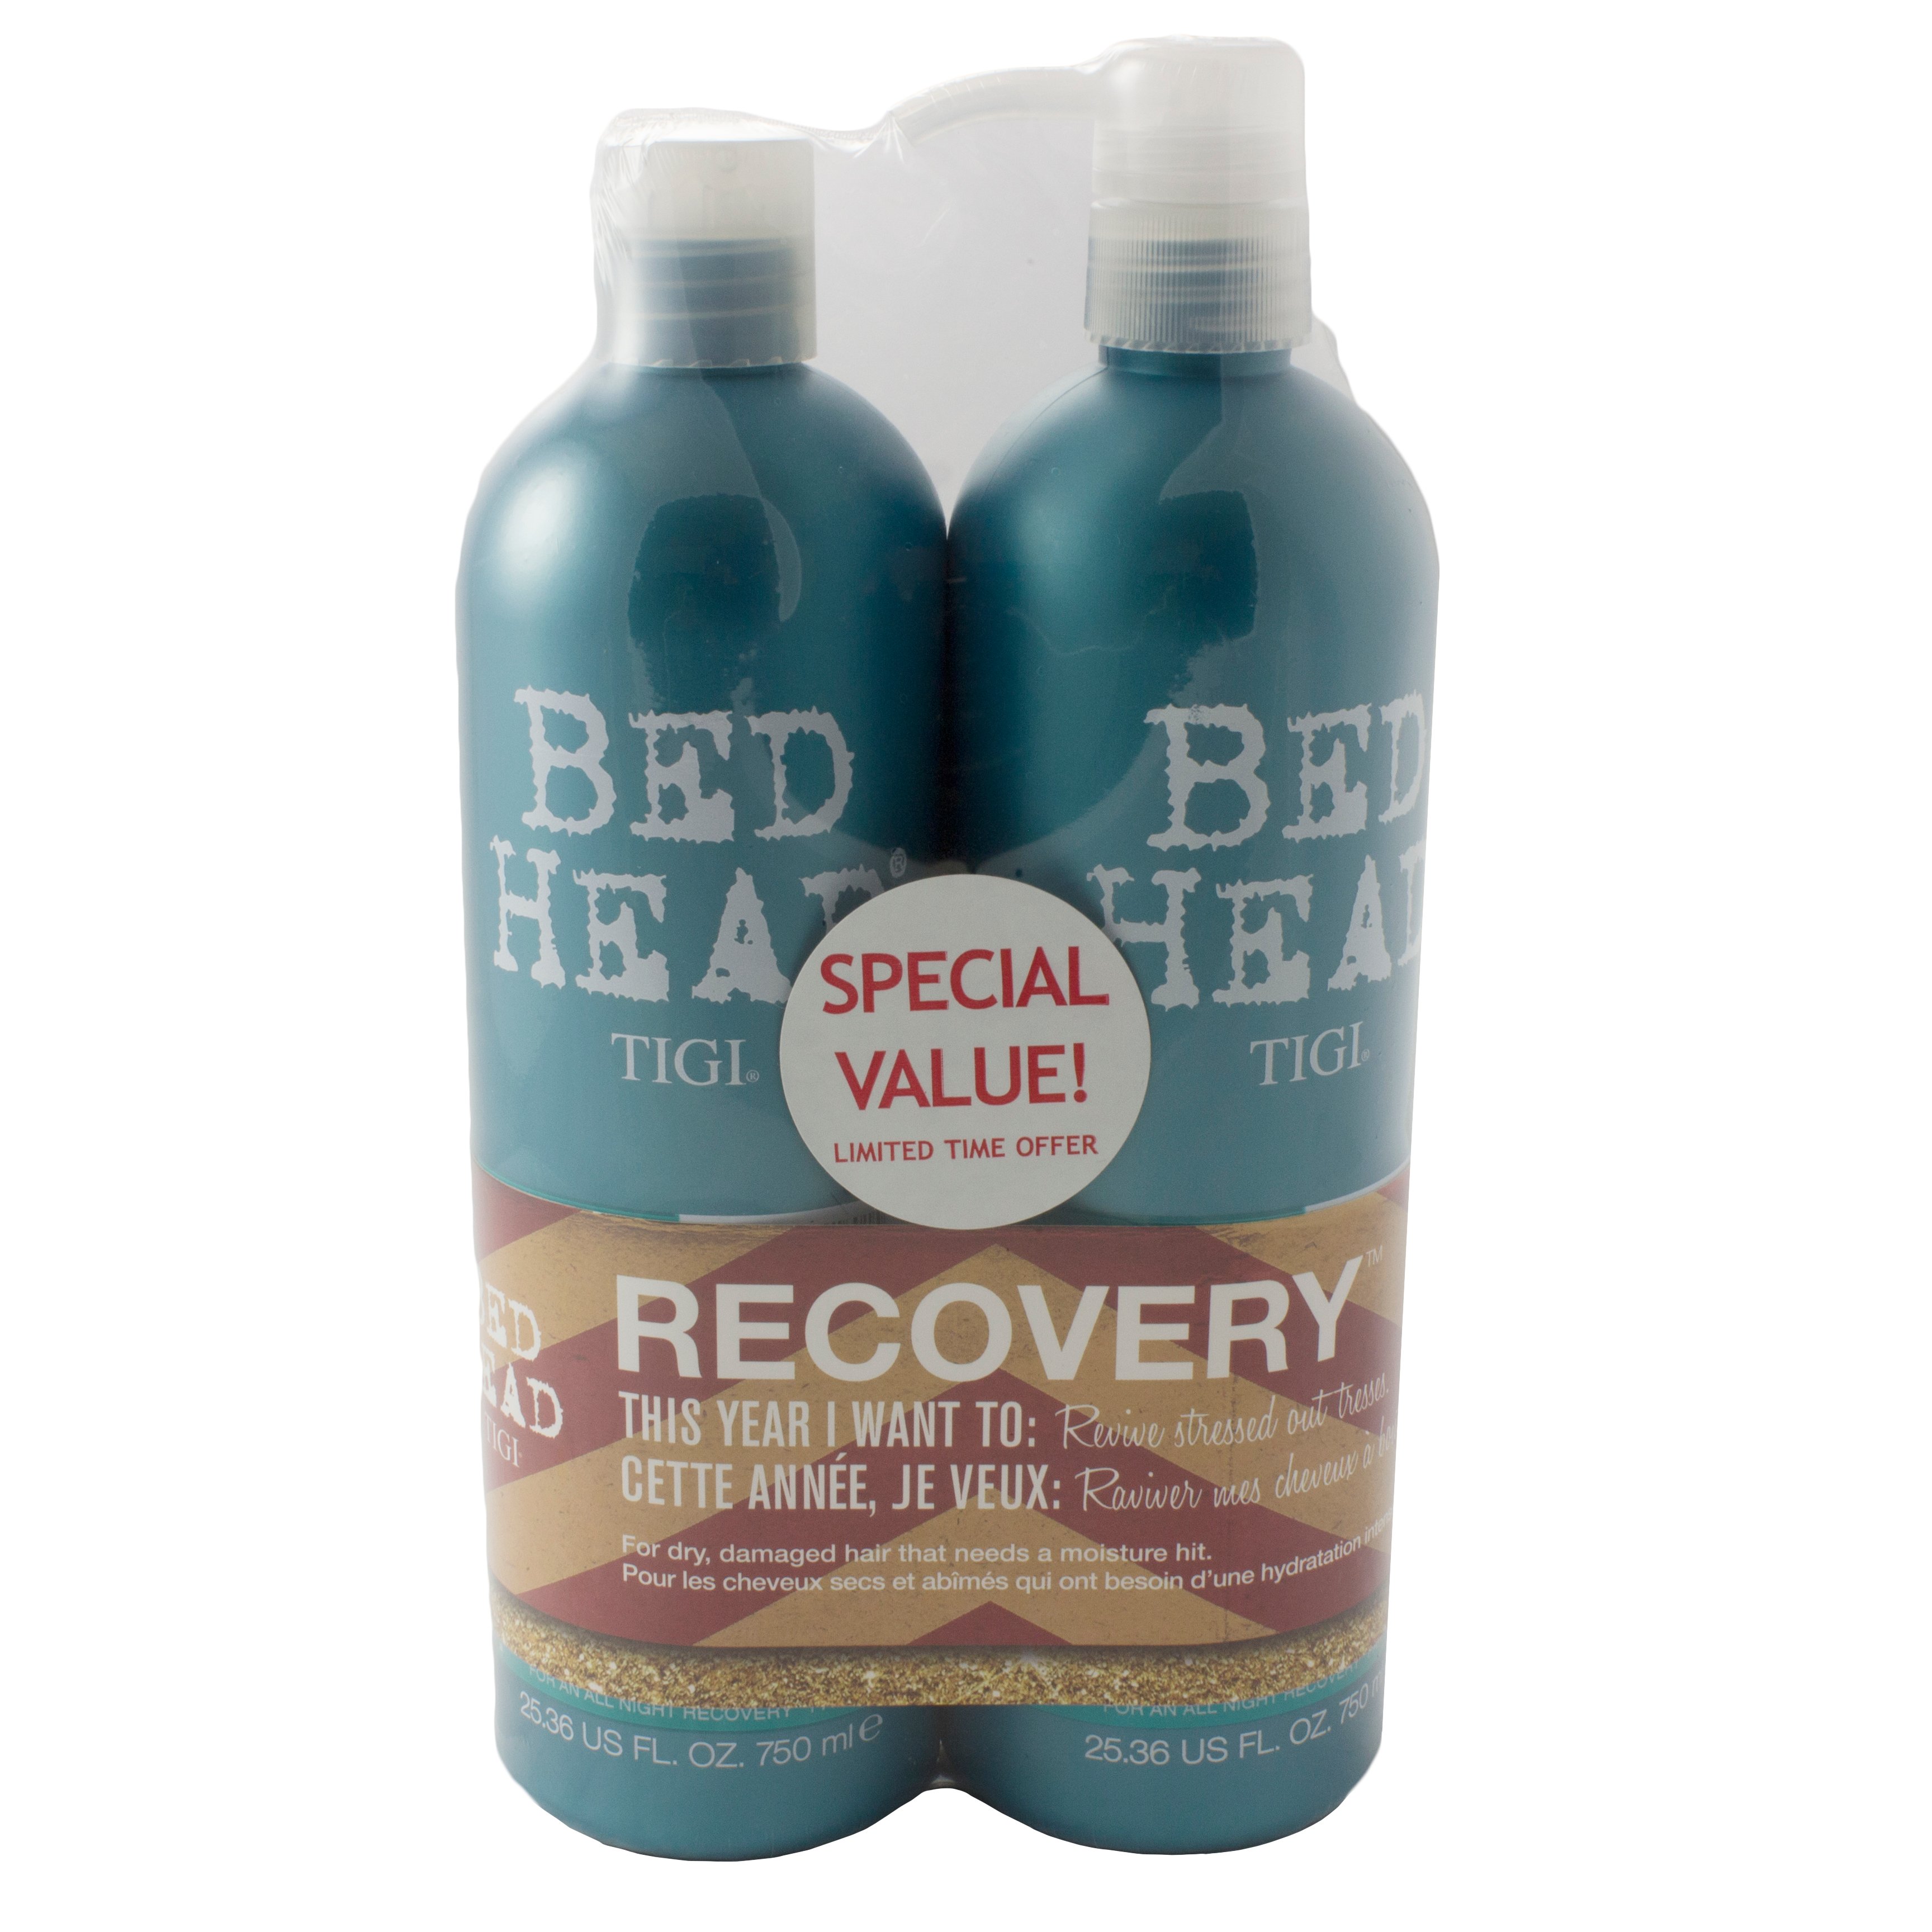 TIGI Bed Head Recovery Shampoo Conditioner Duo - Shop Shampoo & Conditioner at H-E-B